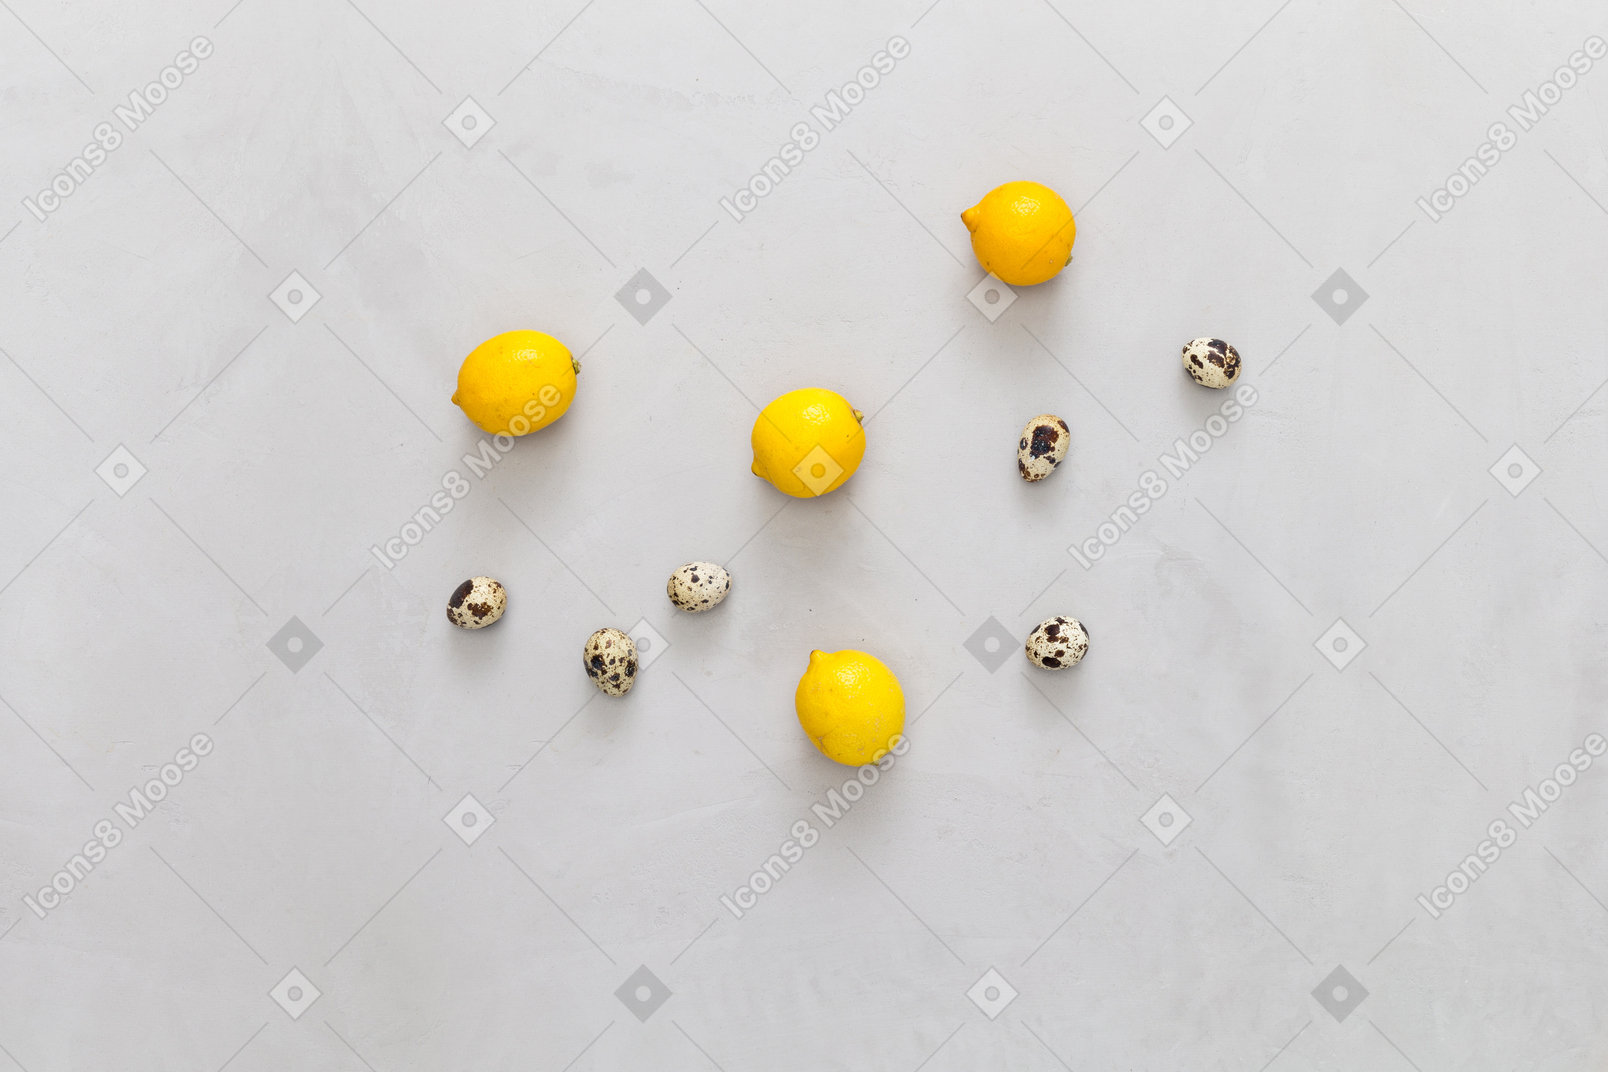 Algunos limones y huevos de codorniz.